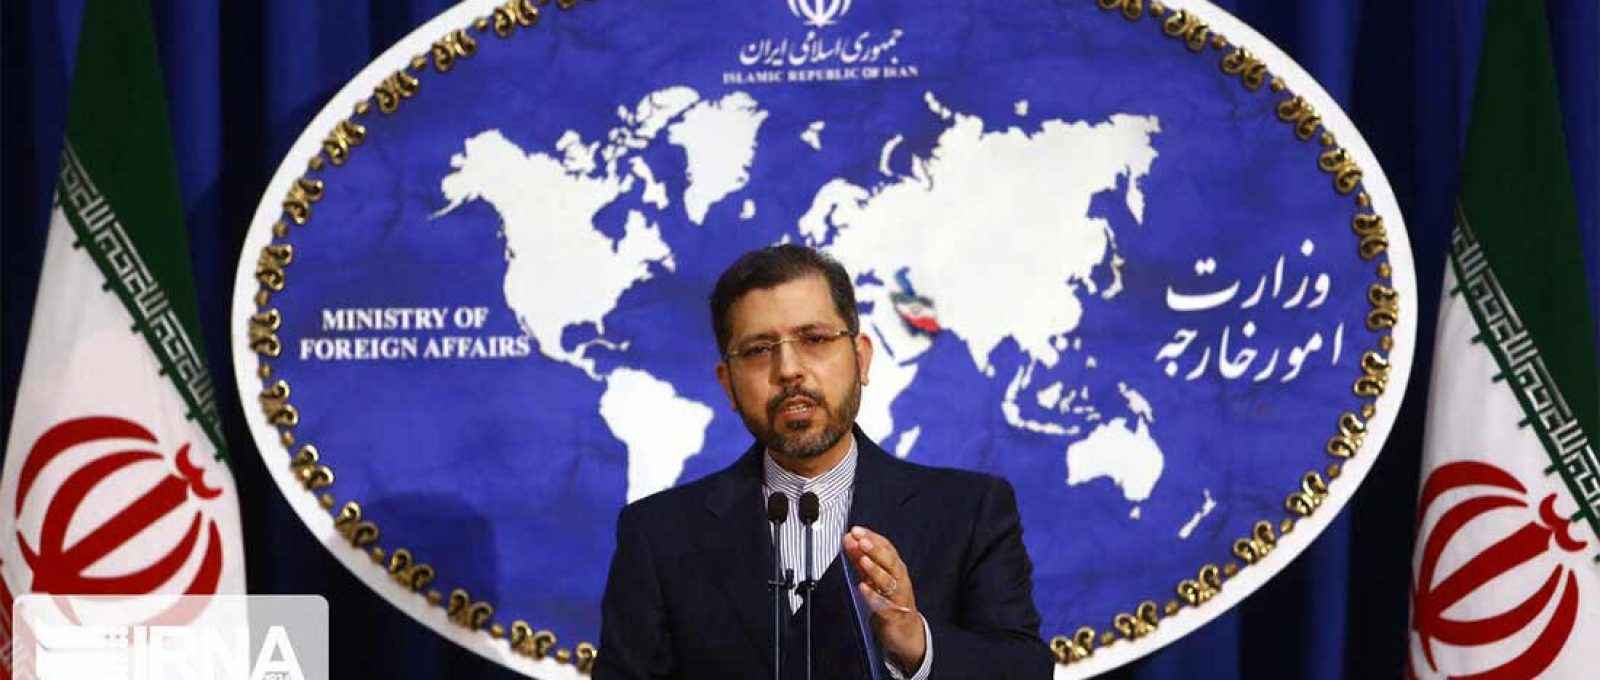 O porta-voz do Ministério das Relações Exteriores do Irã, Saeed Khatibzadeh (Foto: IRNA).